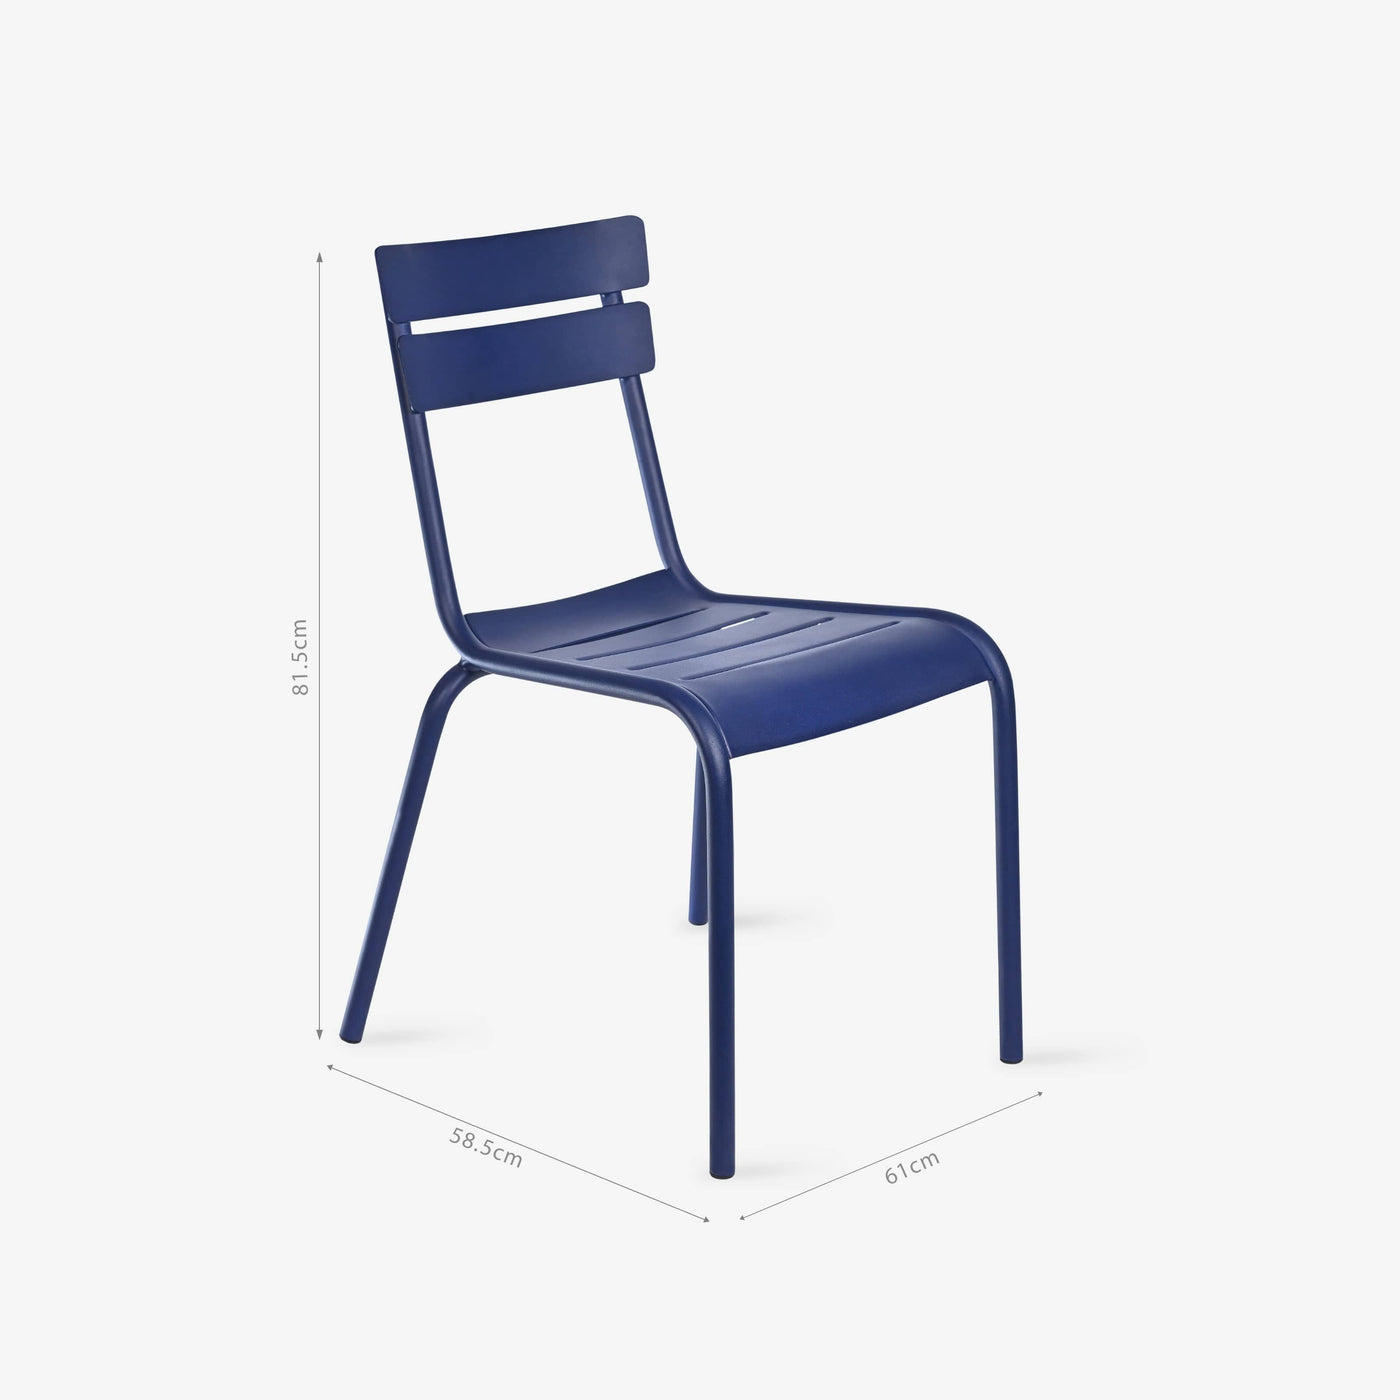 Rosta Stackable Aluminium Garden Chair, Cobalt Blue Garden Chairs sazy.com